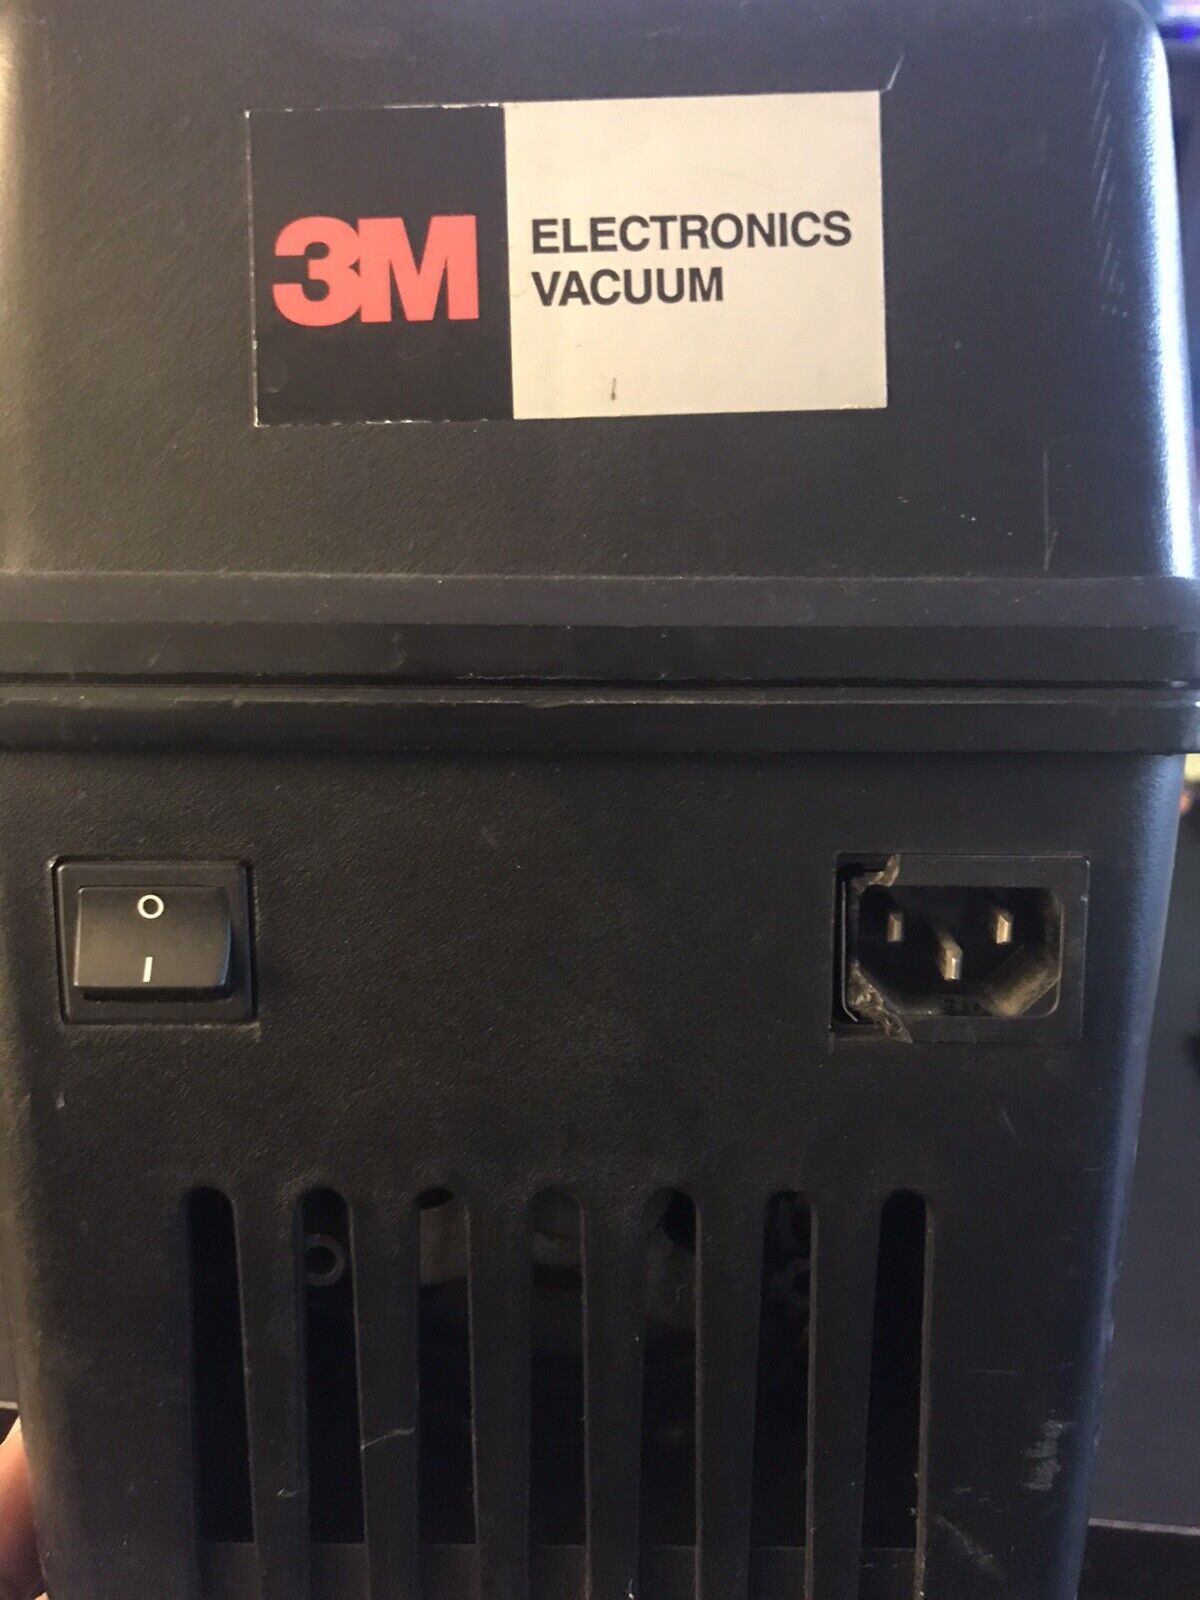 3M 497 Electronics Vacuum